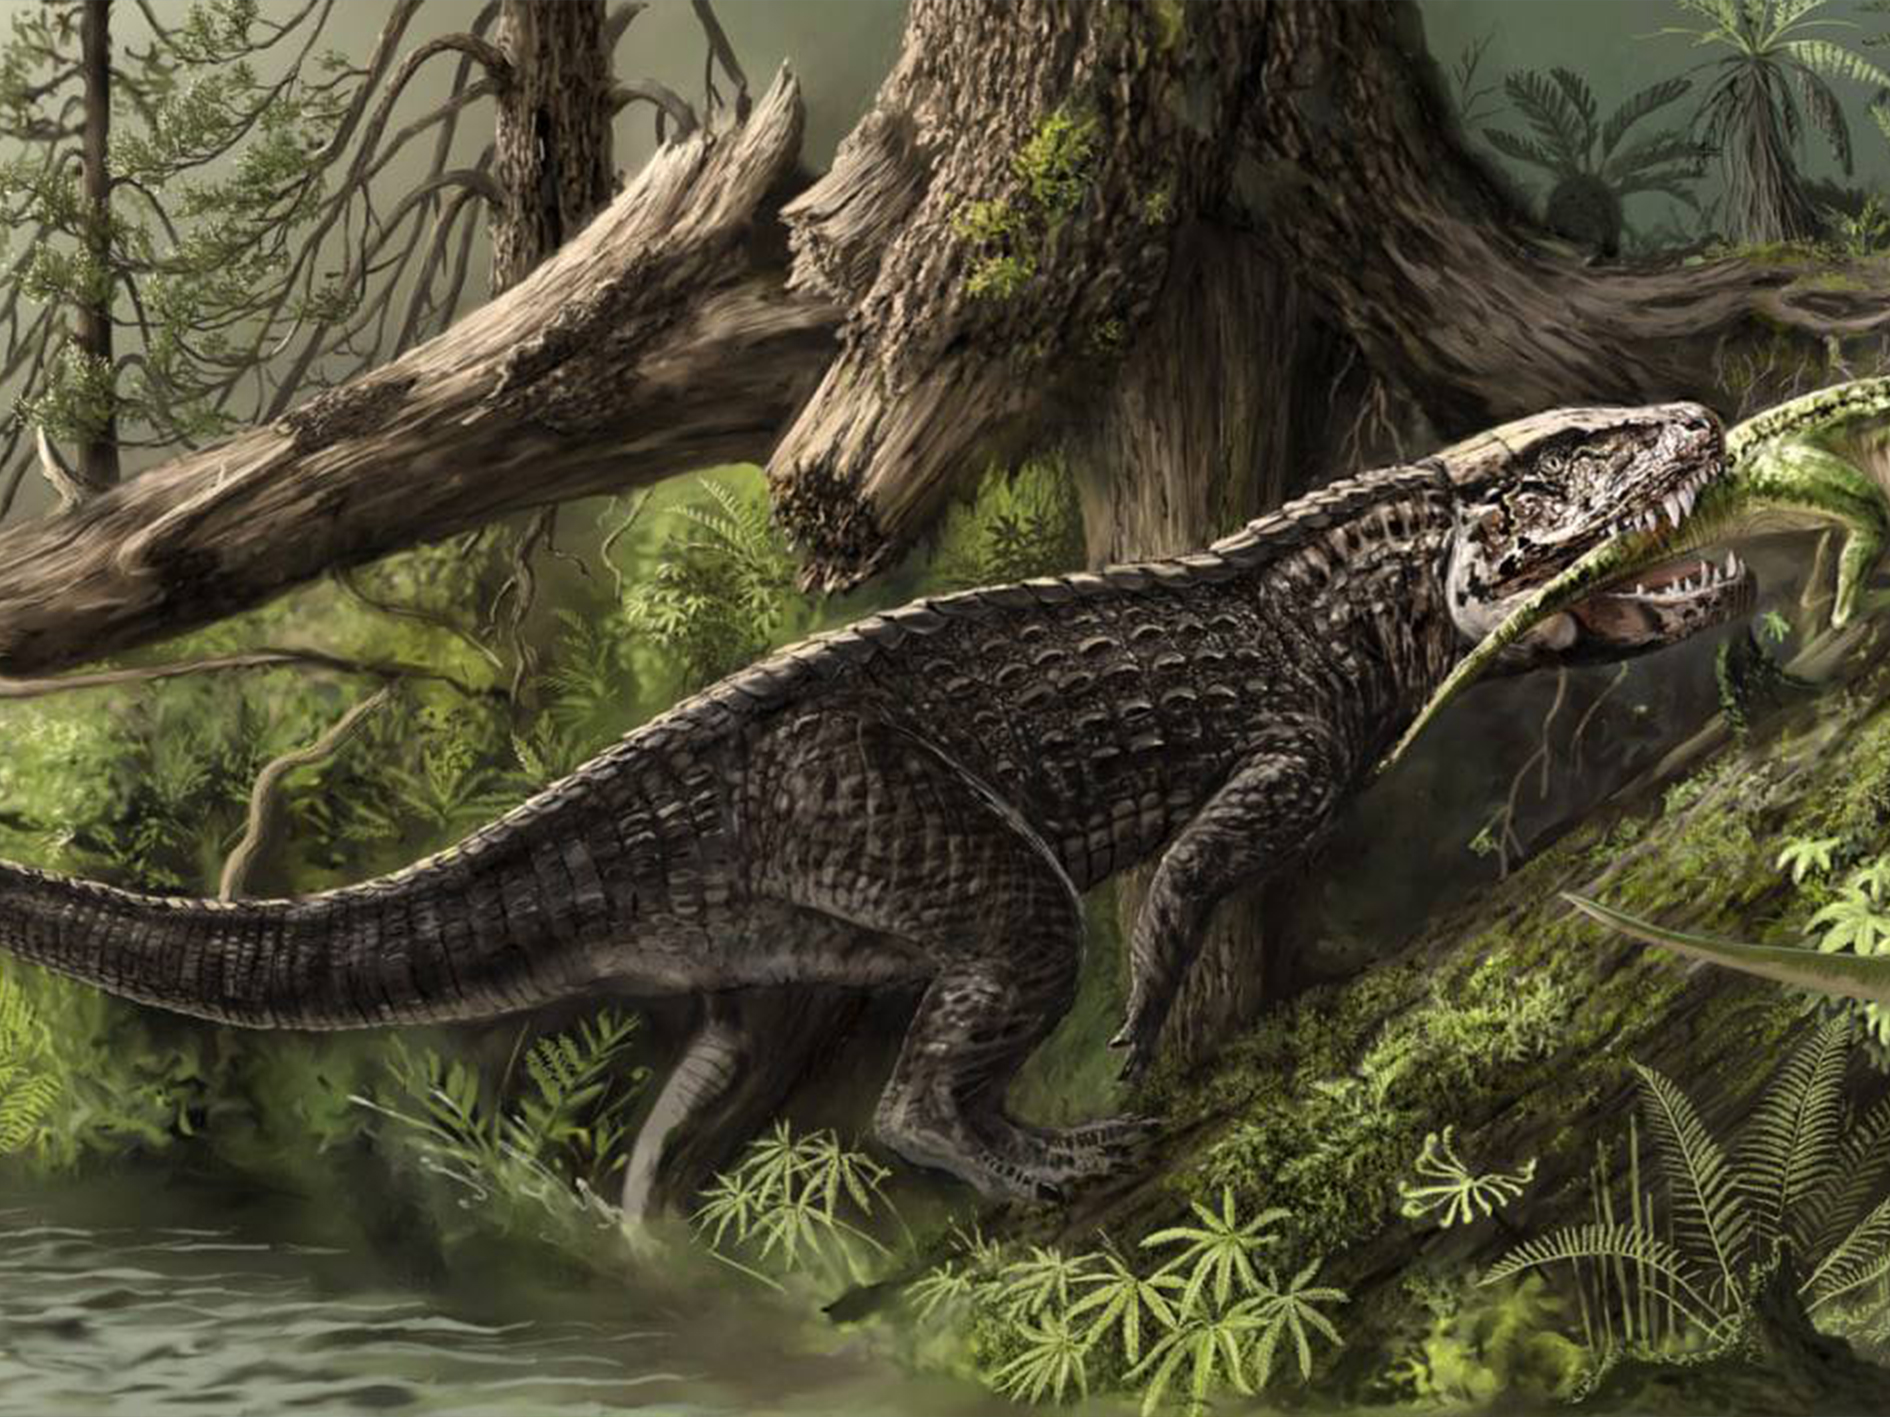 Пресмыкающиеся мезозойской эры. Динозавры Триасового периода. Триасовый период мезозойской эры. Равизухии Триасового периода. Архозавры мезозойской эры.